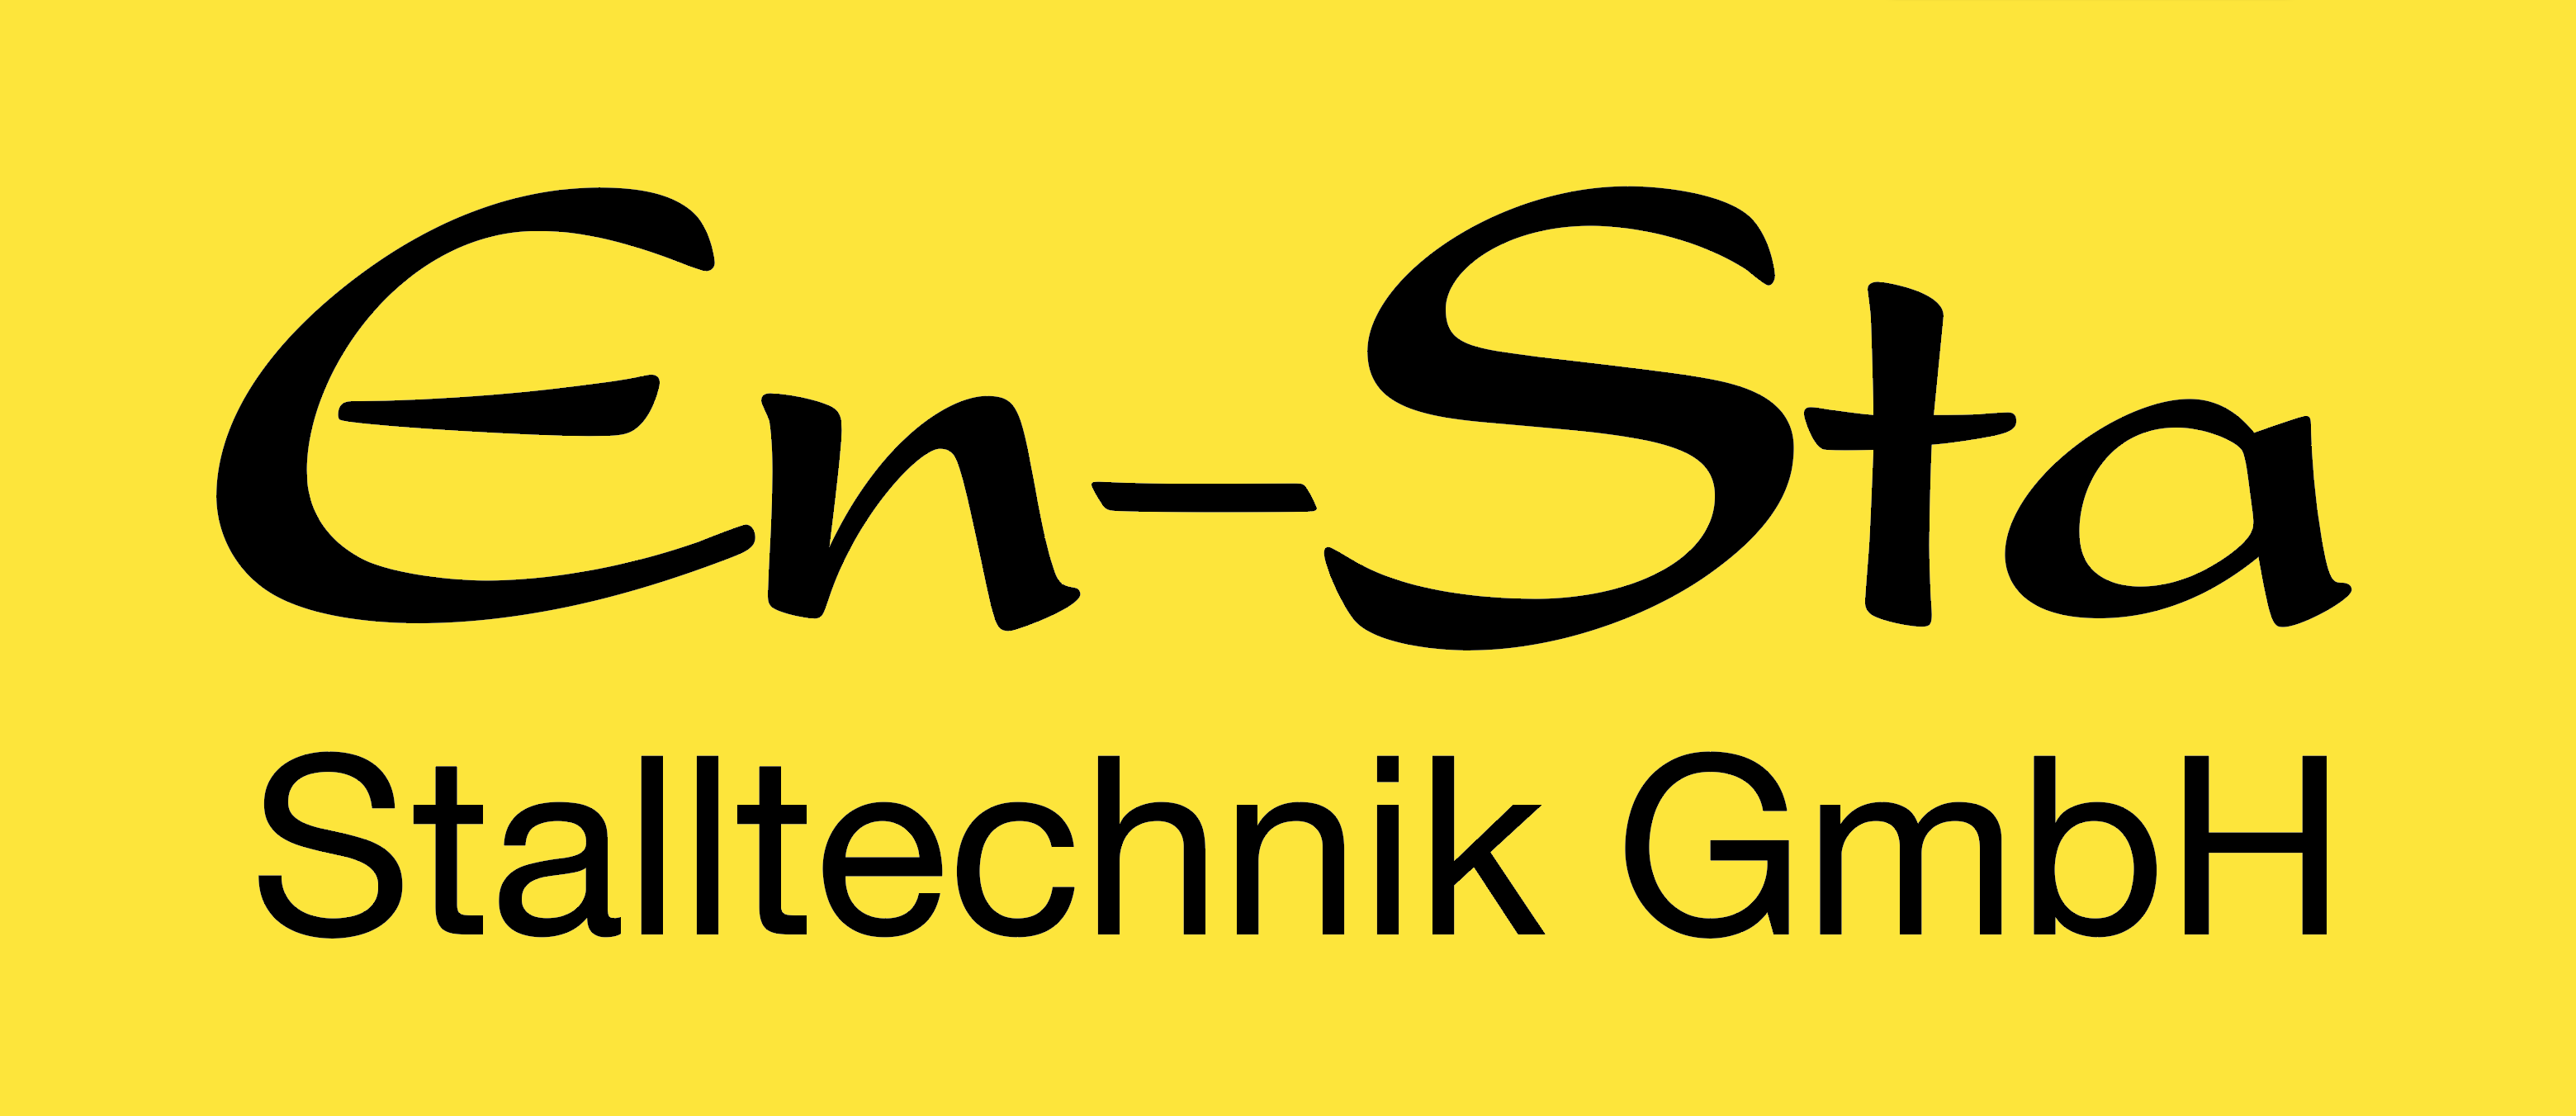 En-Sta Stalltechnik GmbH